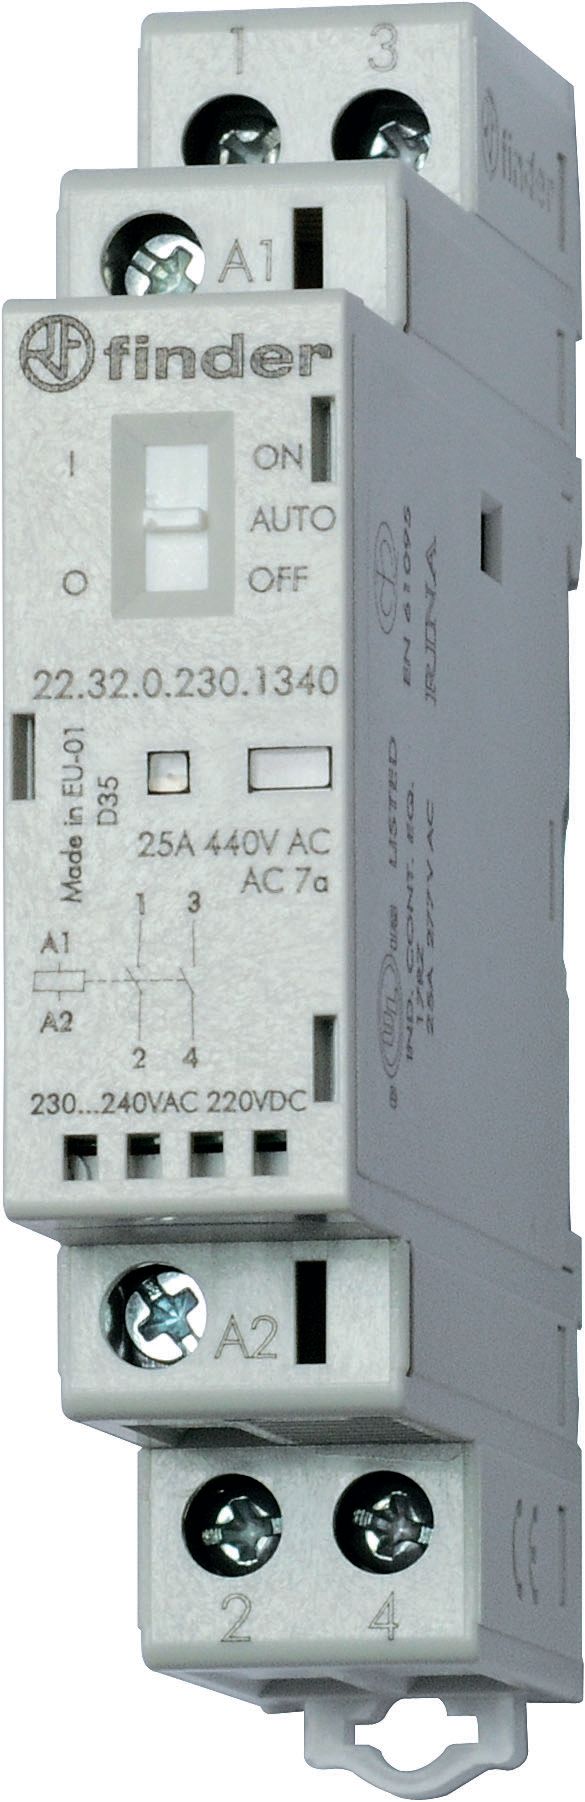 Изображение Finder Модульный контактор; 2NO 25А; контакты AgNi; катушка 24В АС/DC; ширина 17.5мм; степень защиты IP20; опции: переключатель Авто-Вкл-Выкл + мех.ин